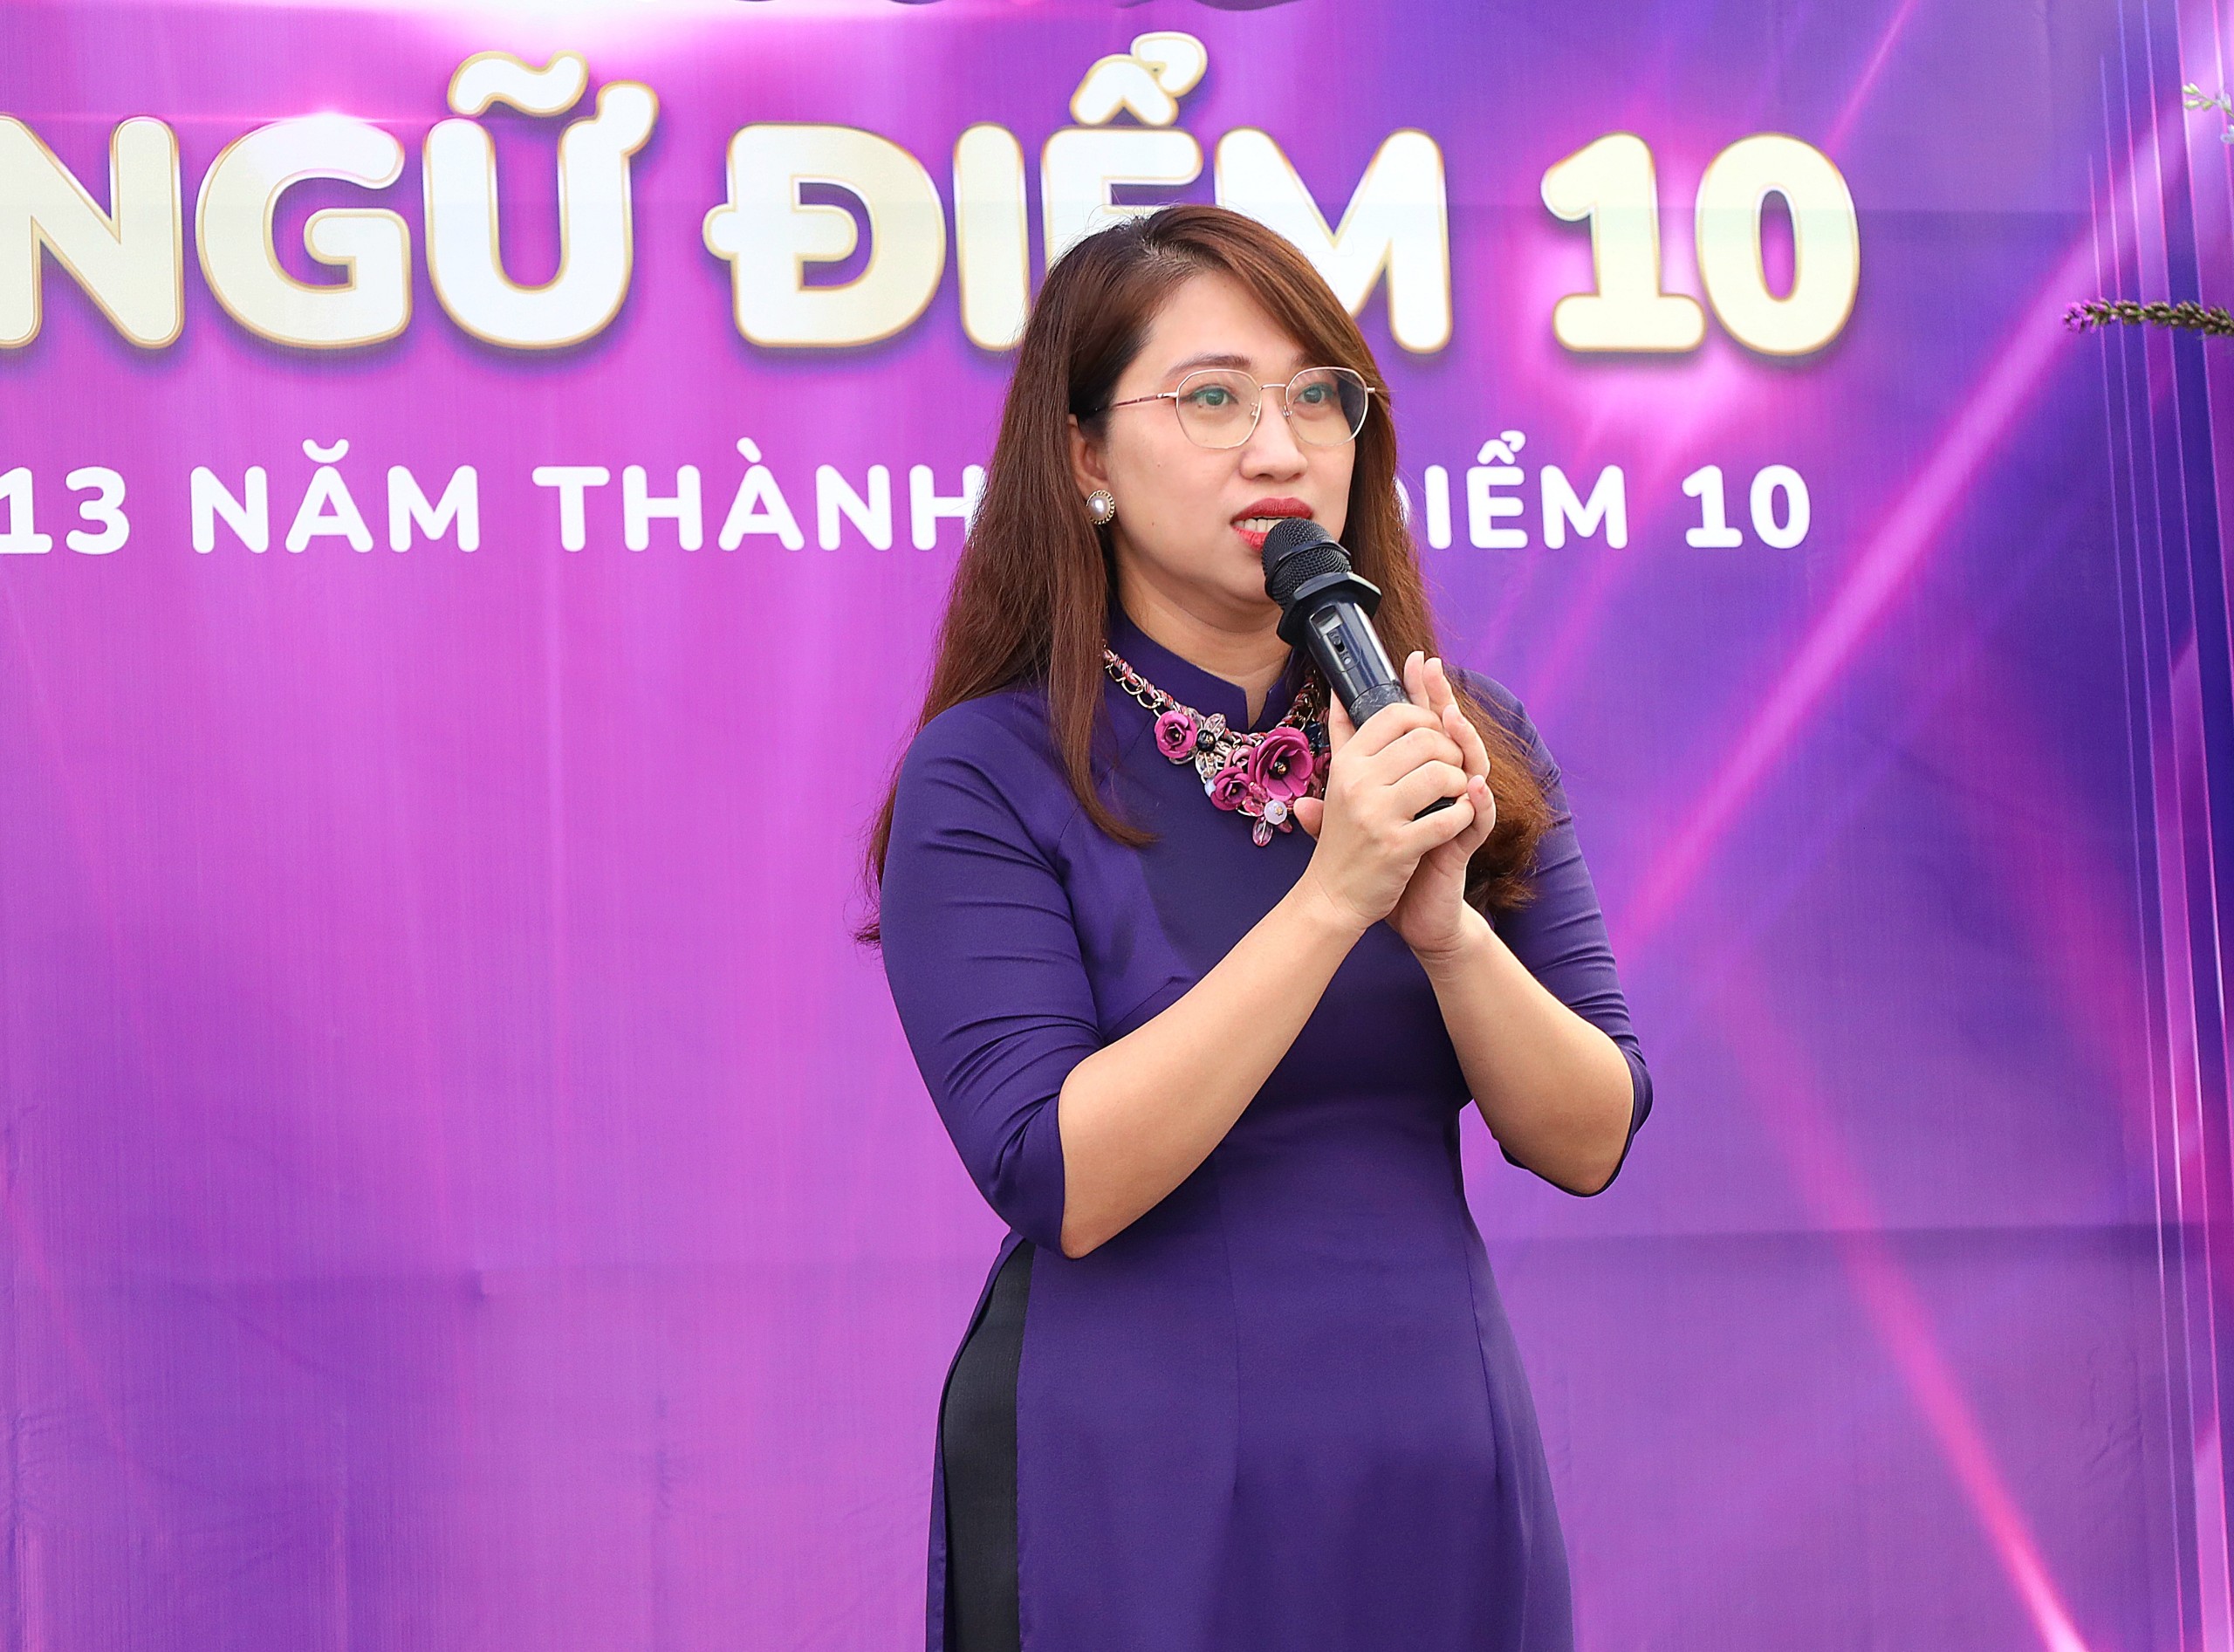 Cô Nguyễn Thị Uyên Thúy – Giám đốc điều hành Trung tâm Anh Ngữ Điểm 10 phát biểu tại lễ khai trương.